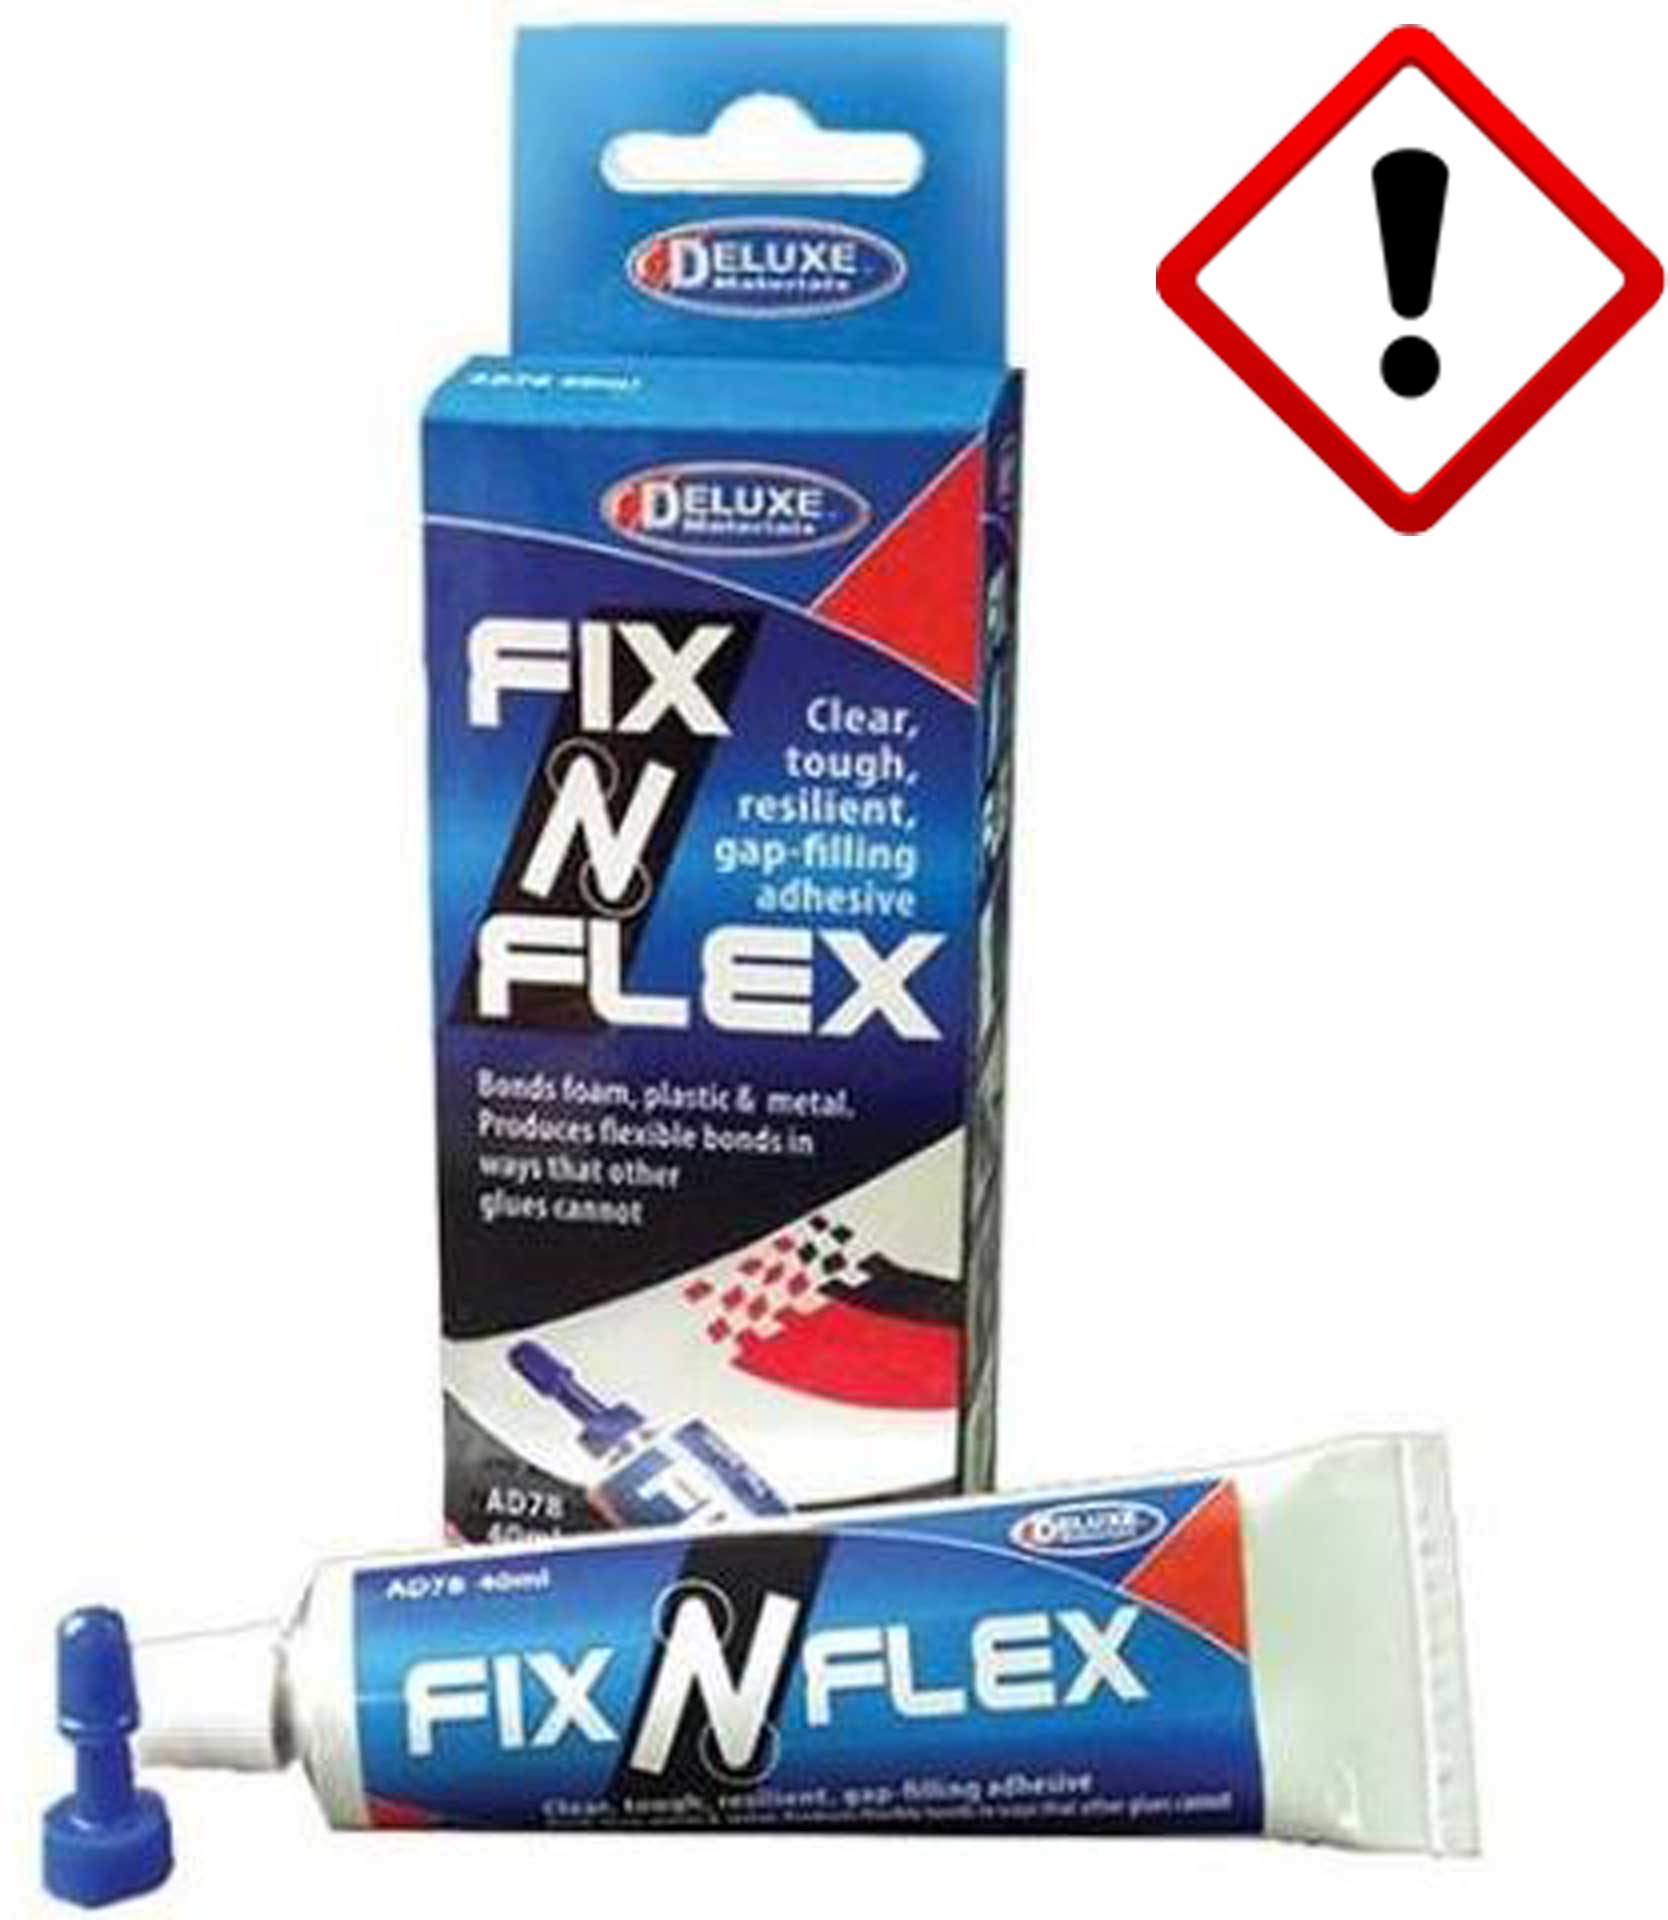 DELUXE FIX ‘N’ FLEX 40ML MOUSSE,PLASTIQUE METALLCOLLE